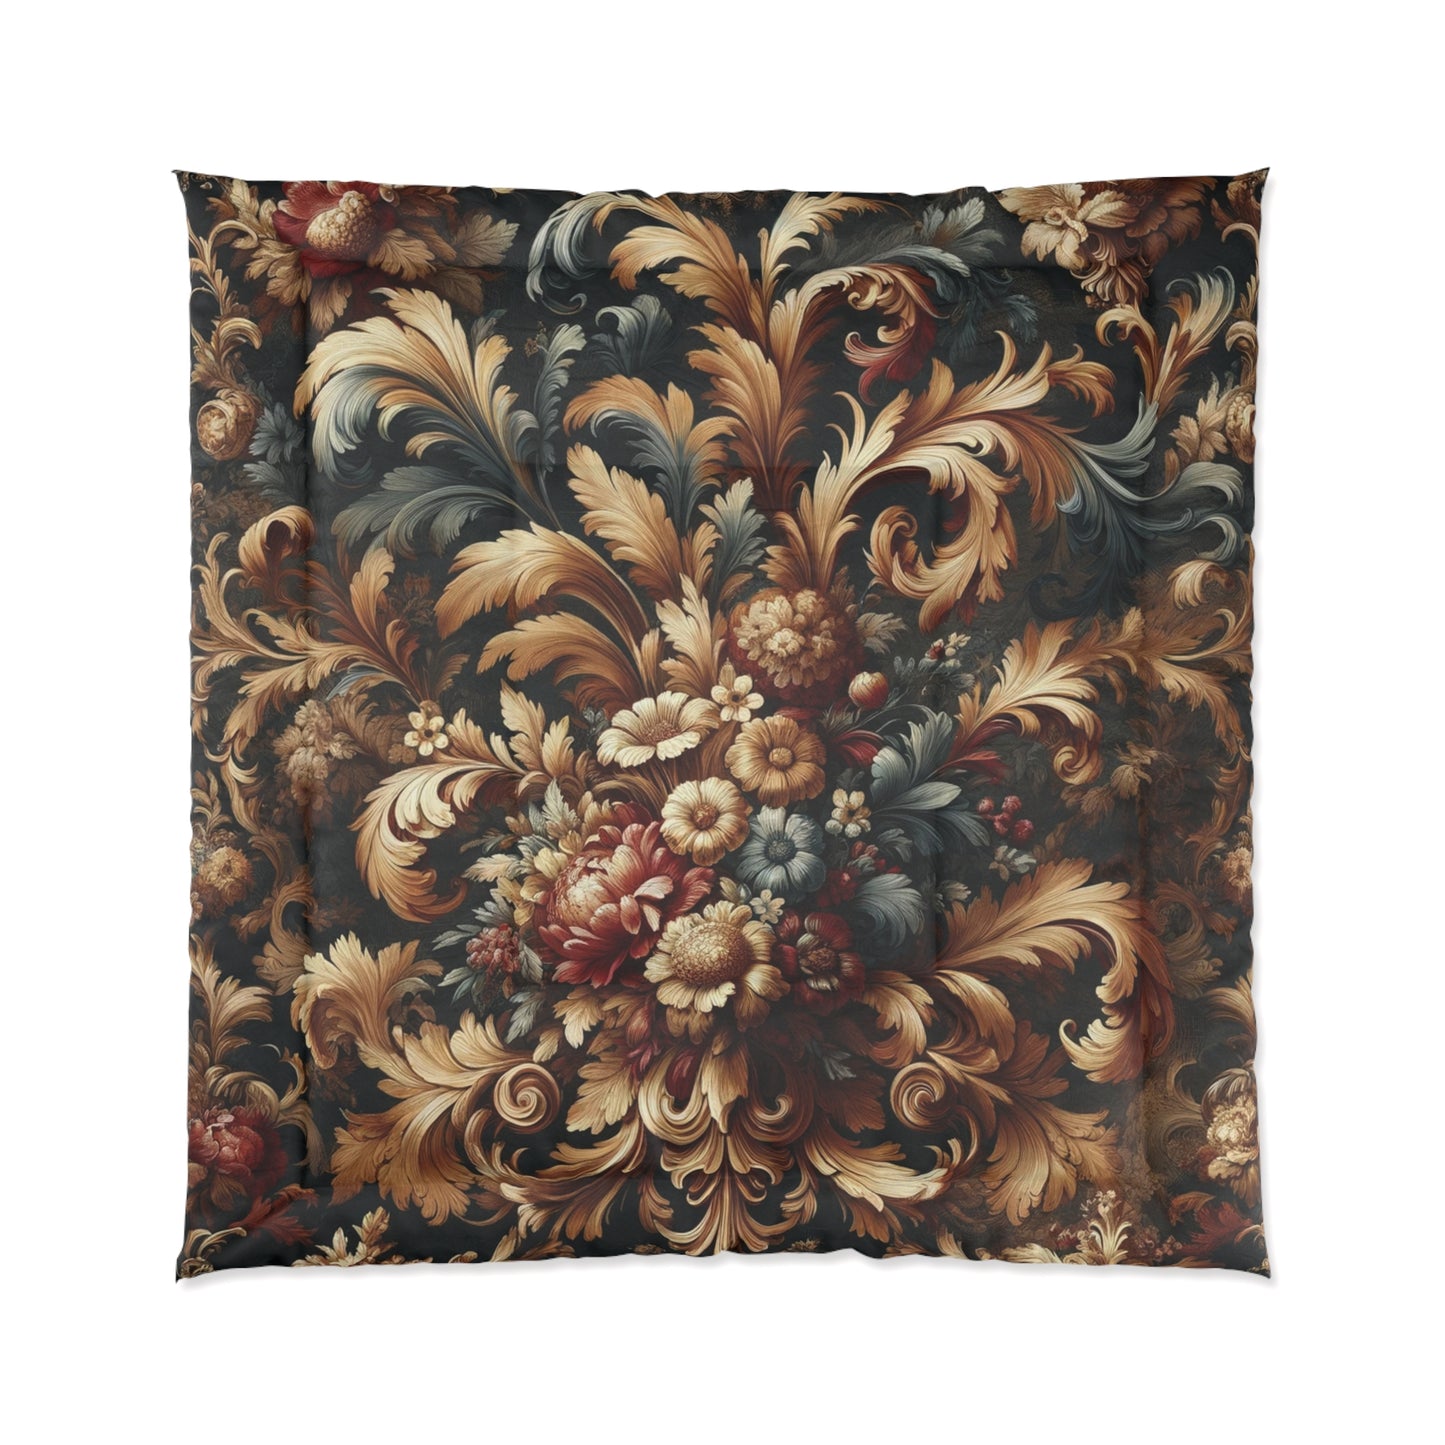 Baroque Splendor Comforter